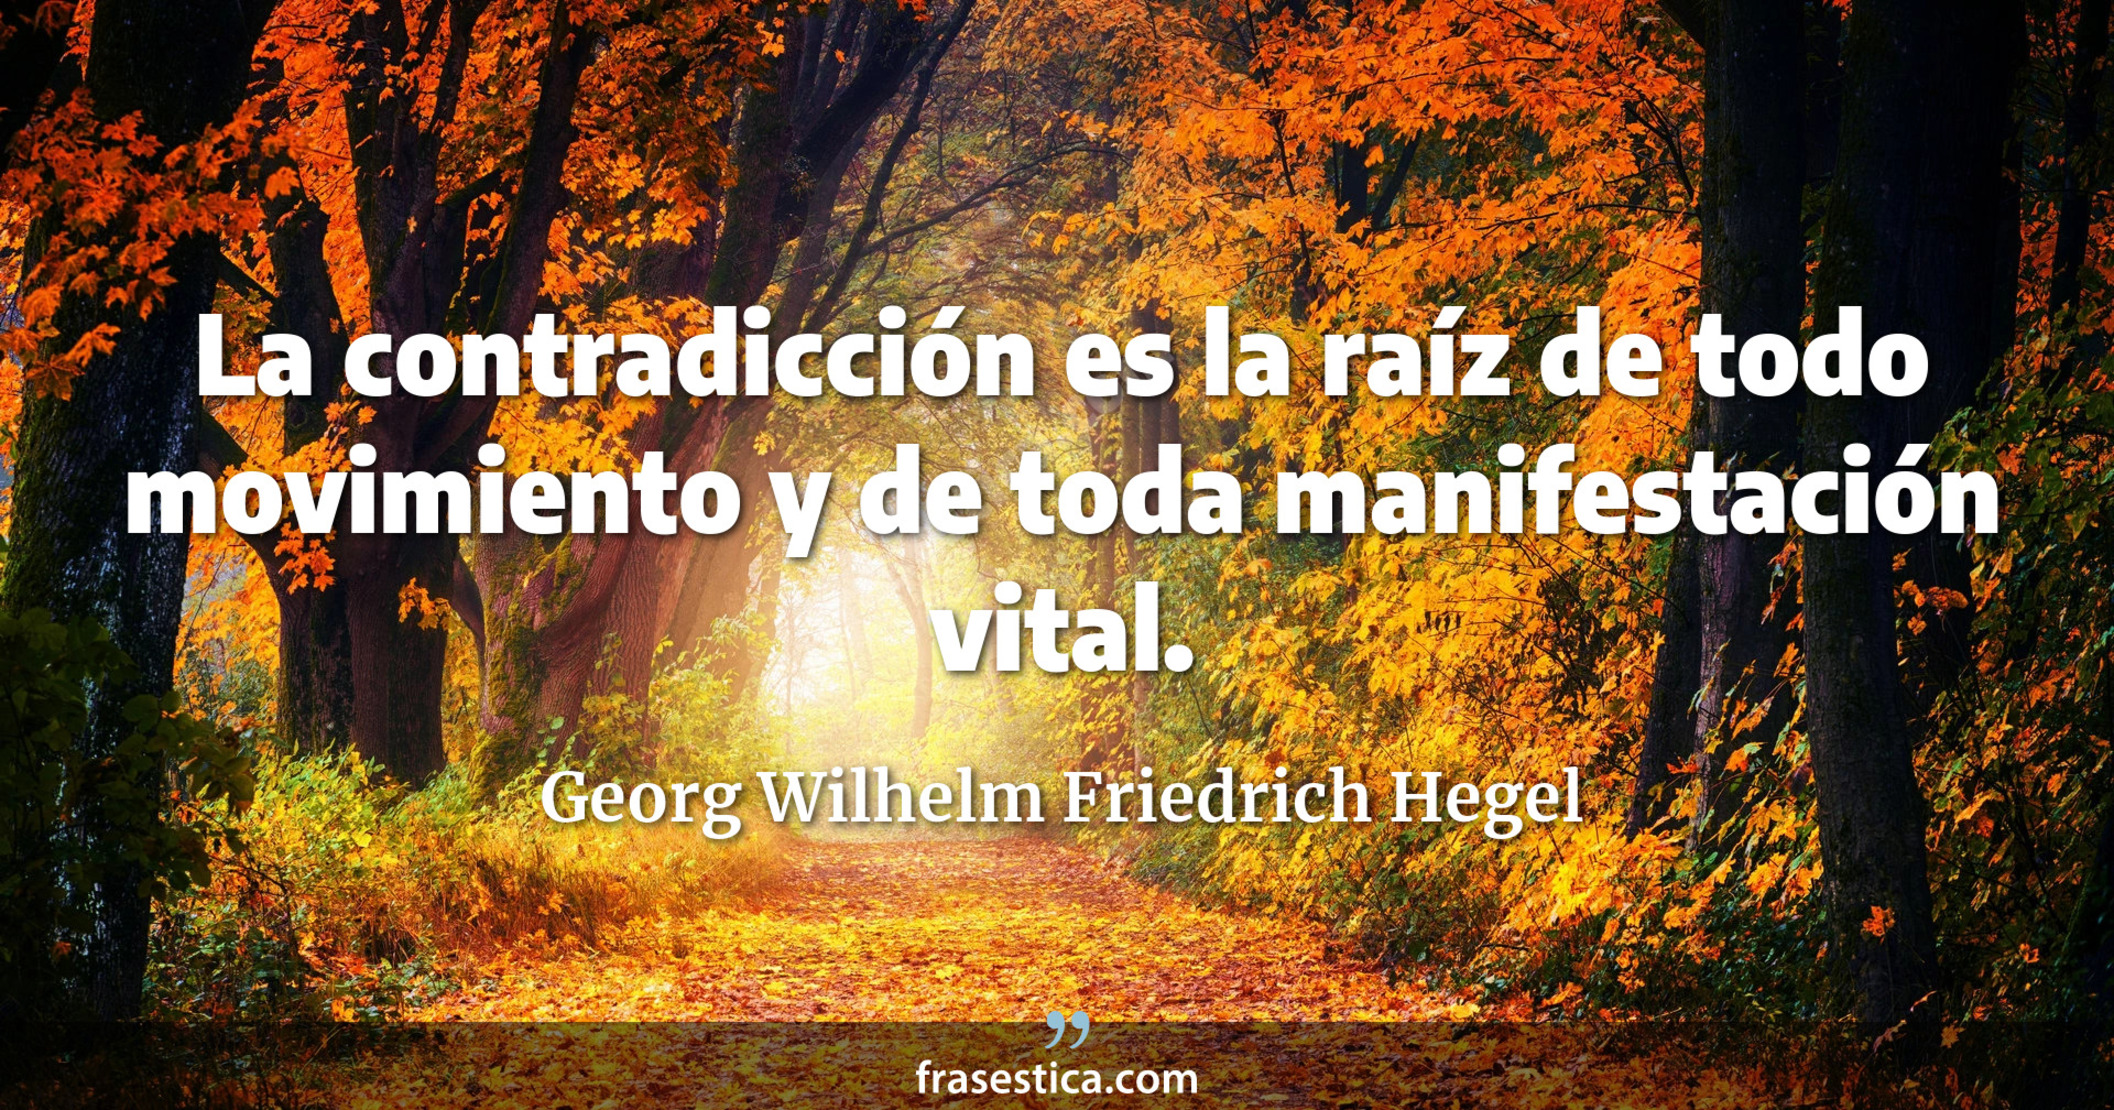 La contradicción es la raíz de todo movimiento y de toda manifestación vital. - Georg Wilhelm Friedrich Hegel